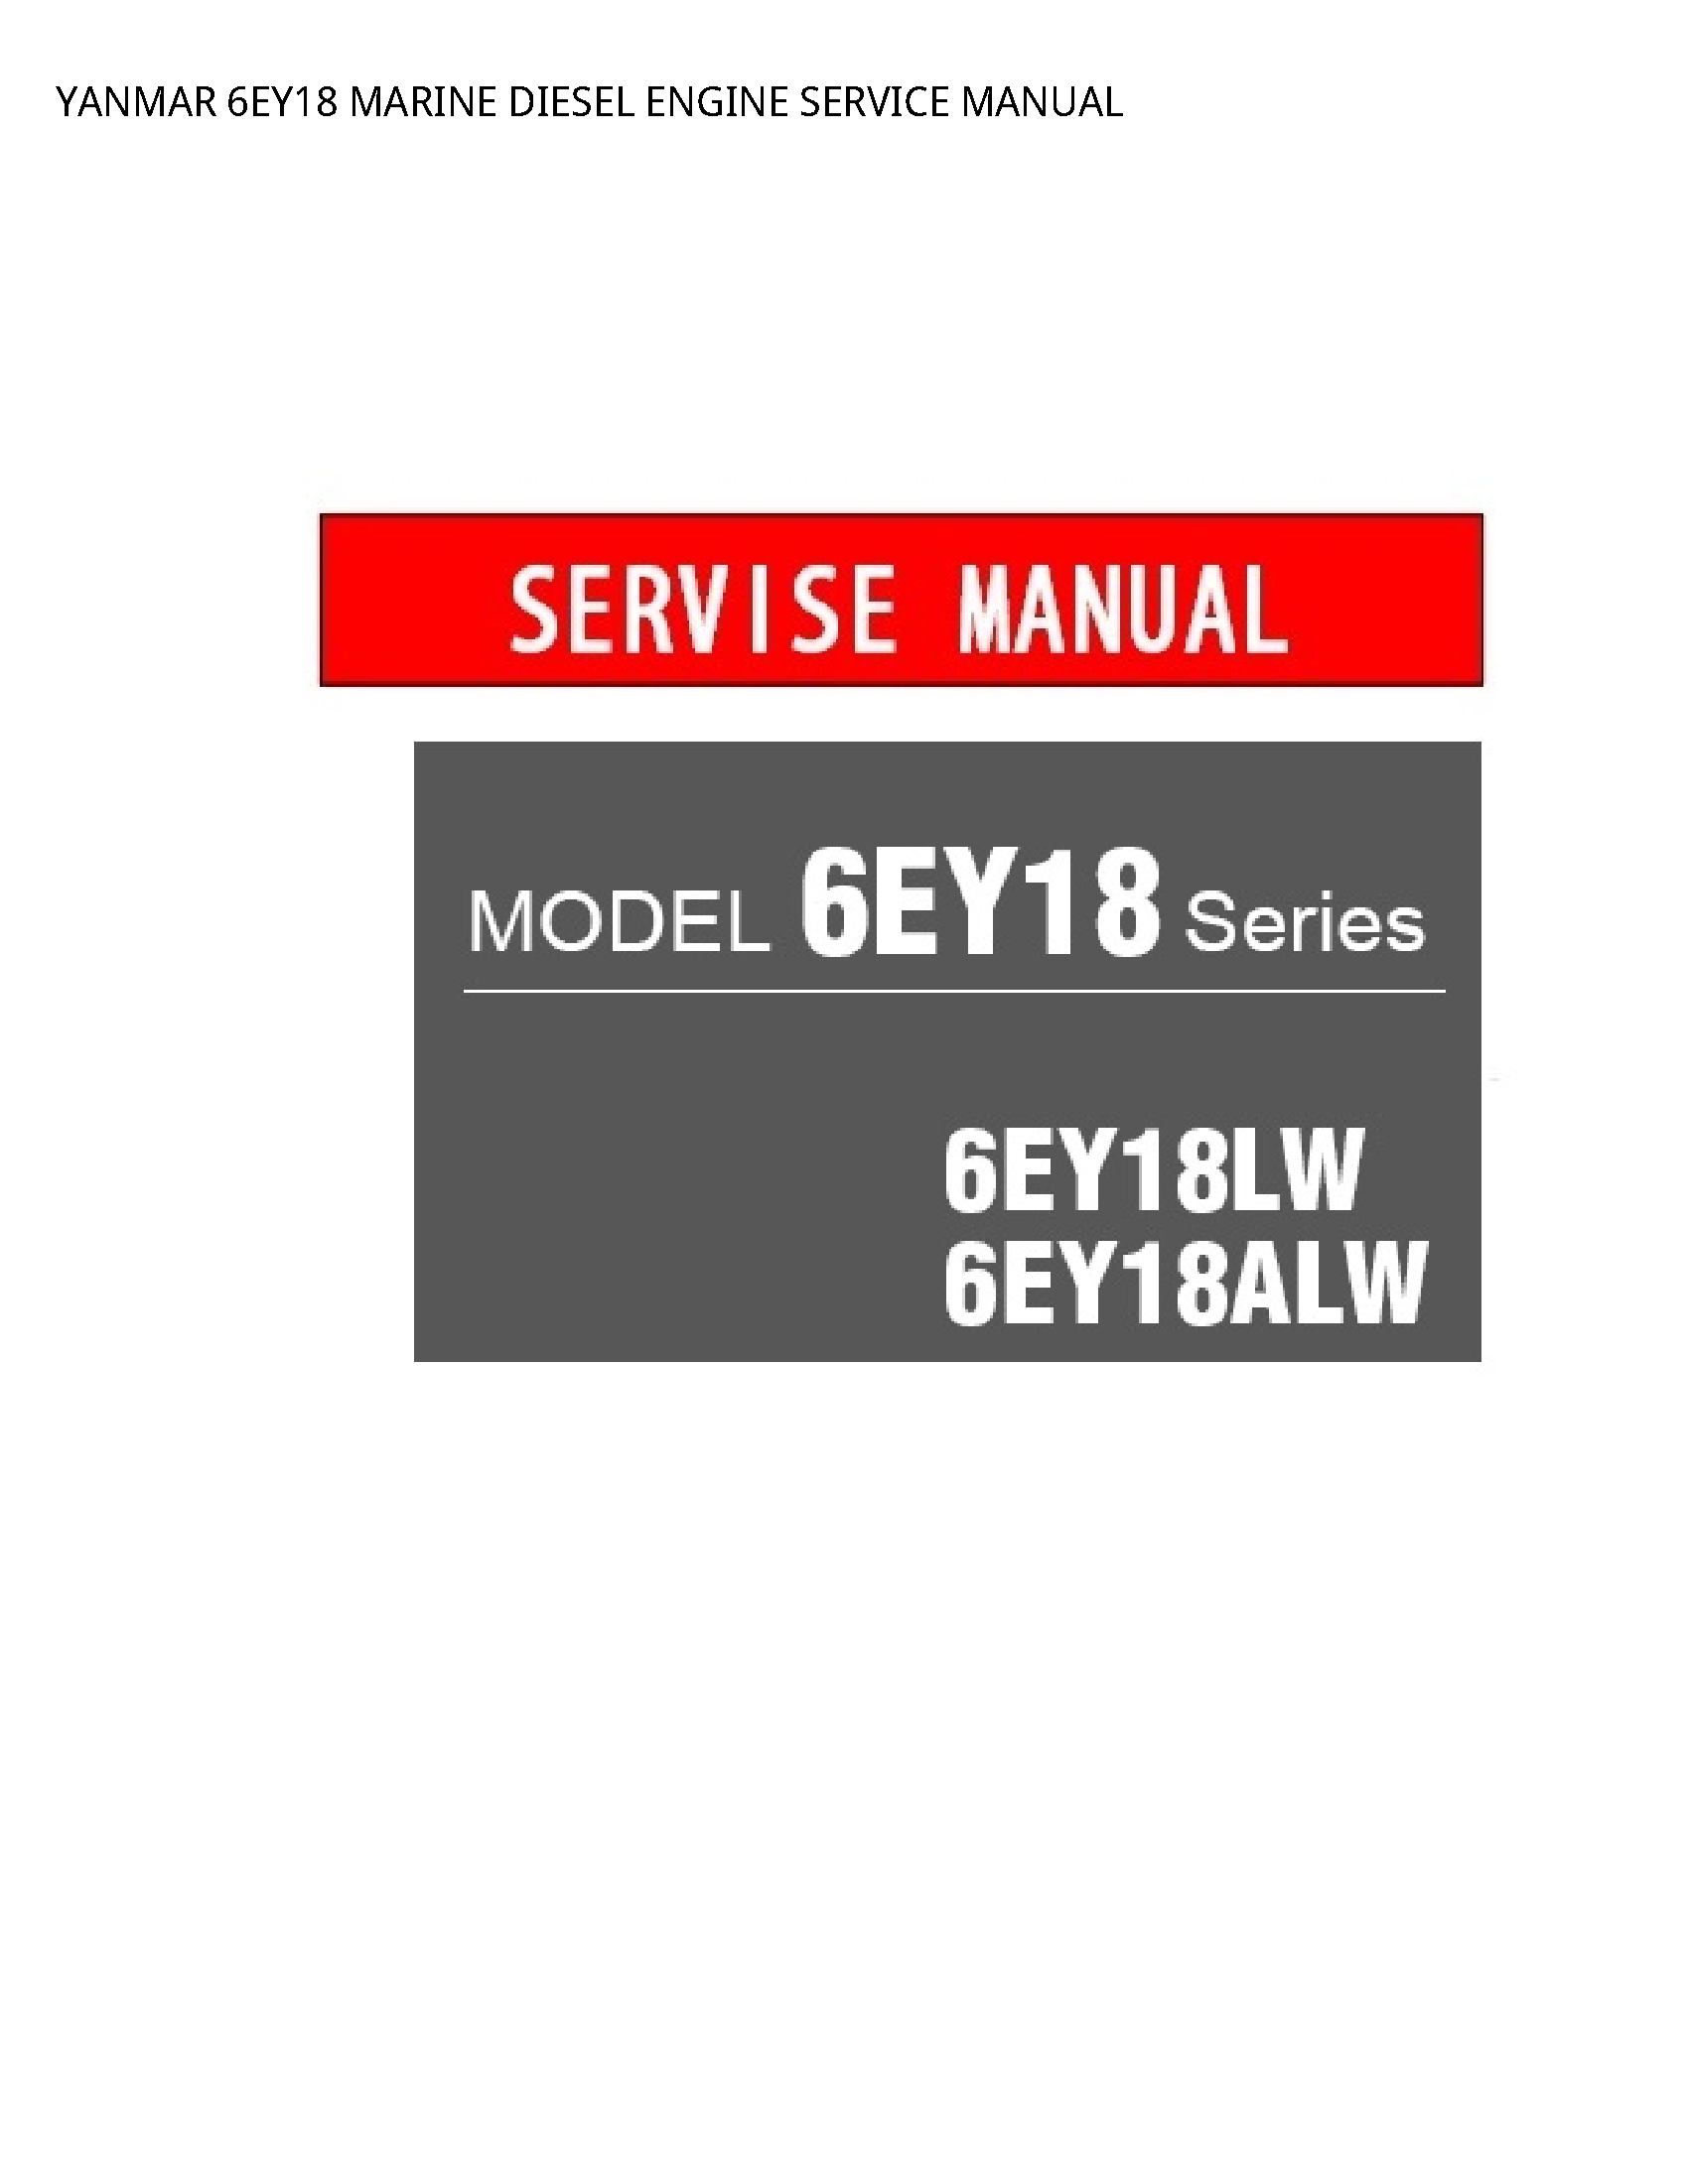 Yanmar 6EY18 MARINE DIESEL ENGINE SERVICE manual